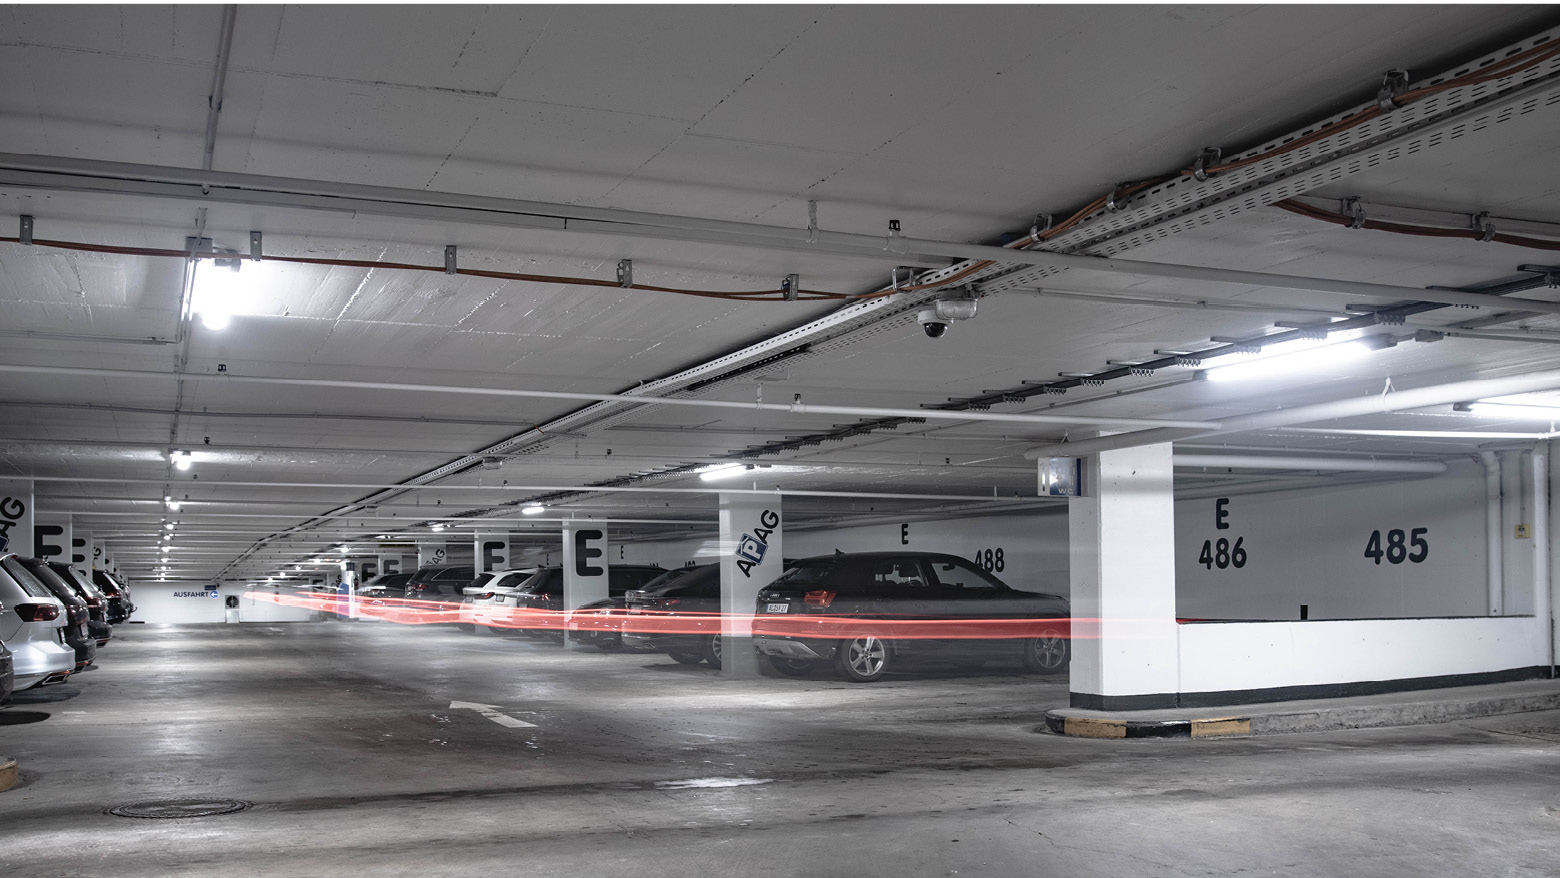 Éclairage parking souterrain 2.0: simple, intelligent et sûr